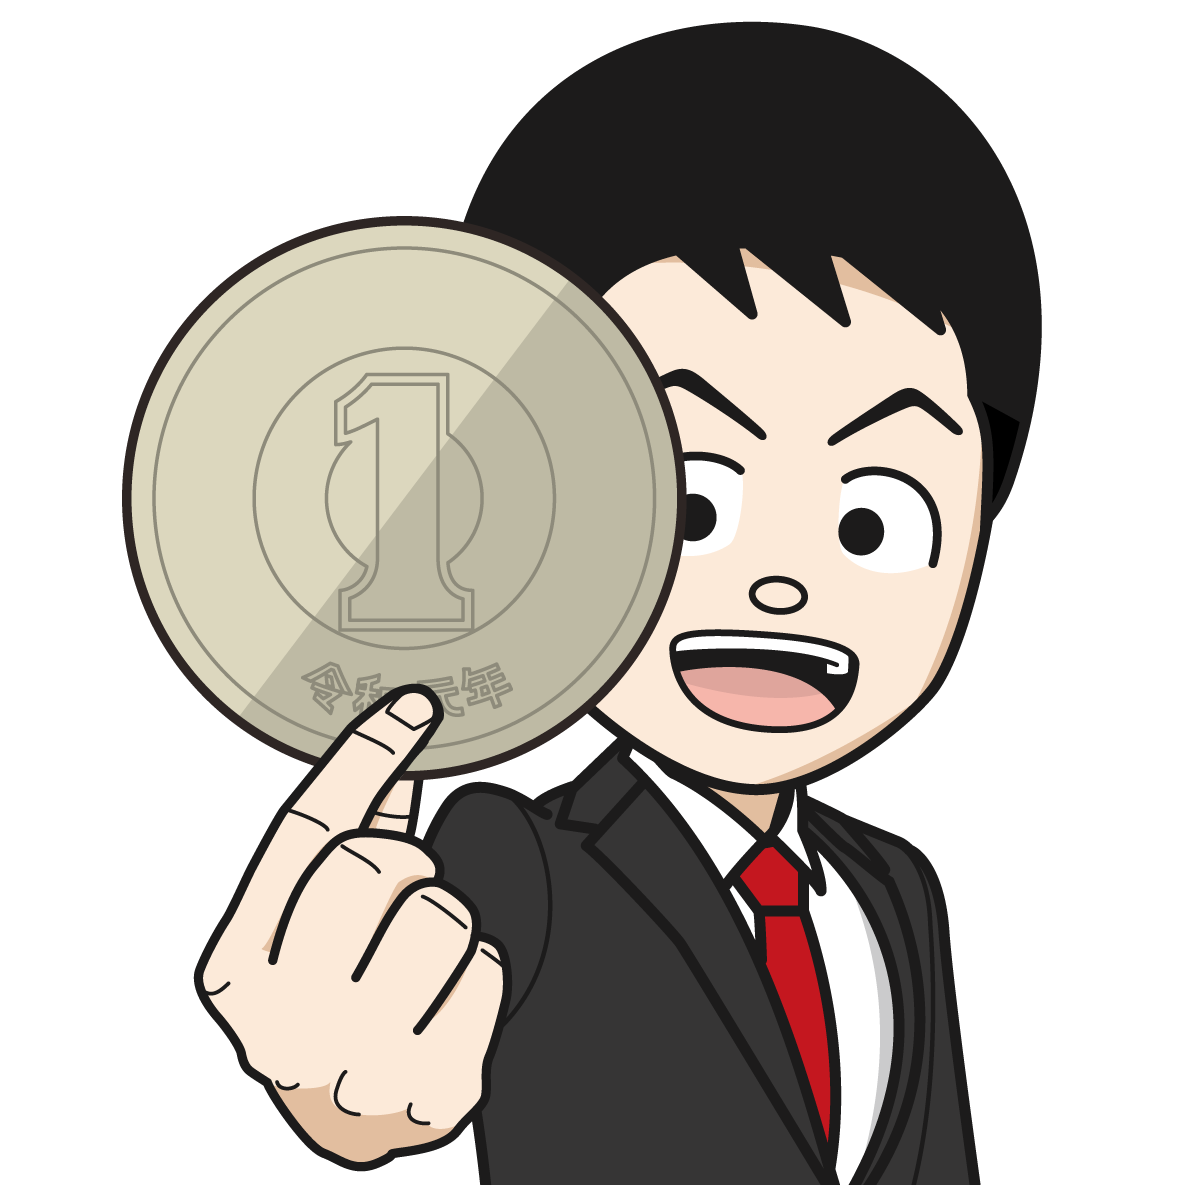 大きな1円を見せるサラリーマン 銀行員 公務員 男 Item 24 イラスト Mido Kichi